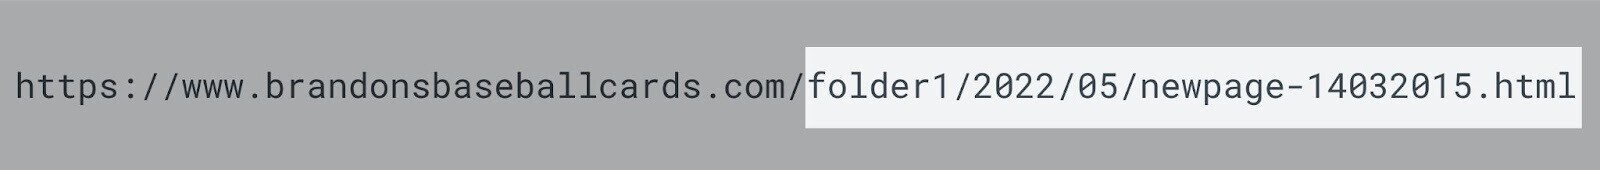 Ejemplo de una URL mal optimizada